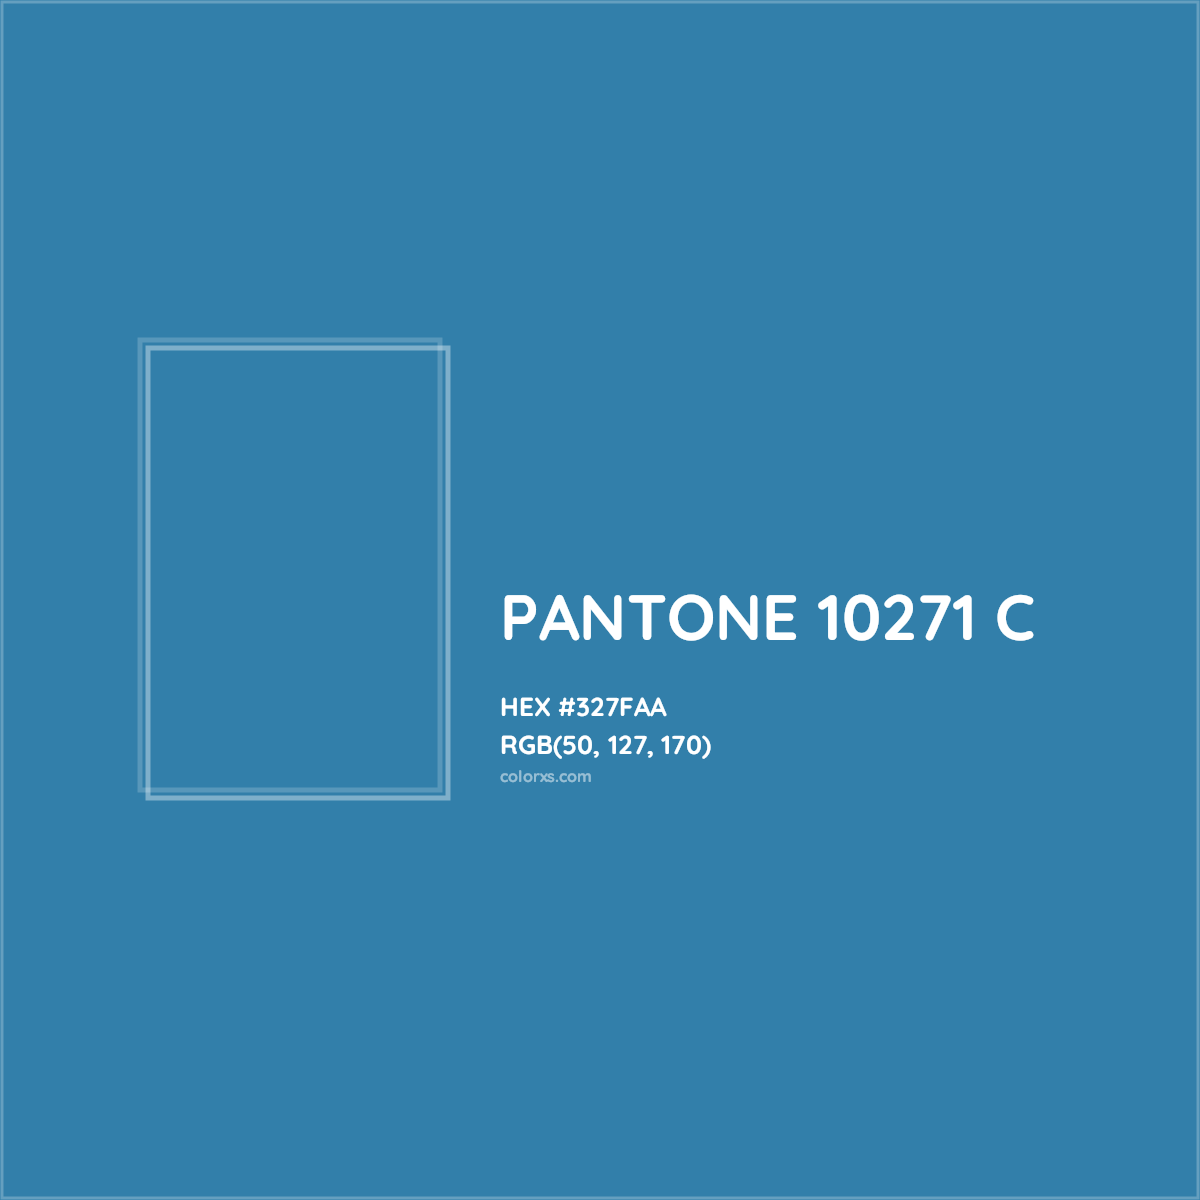 HEX #327FAA PANTONE 10271 C CMS Pantone PMS - Color Code